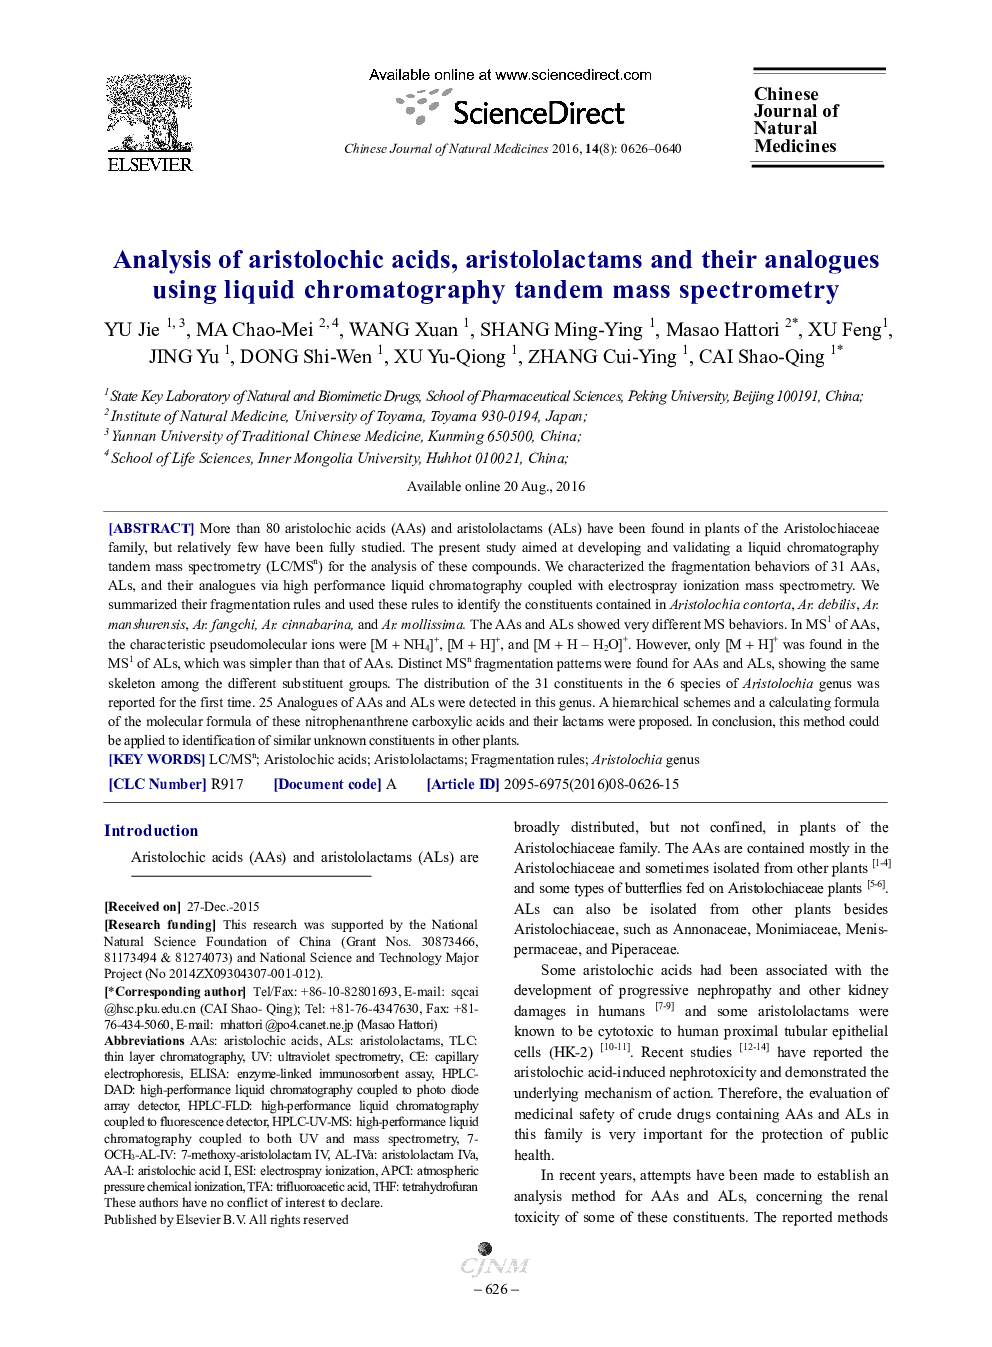 تجزیه و تحلیل آریستولوچیک اسید، aristololactams و آنالوگ های آنها با استفاده از طیف سنجی جرمی پشت سر هم کروماتوگرافی مایع 